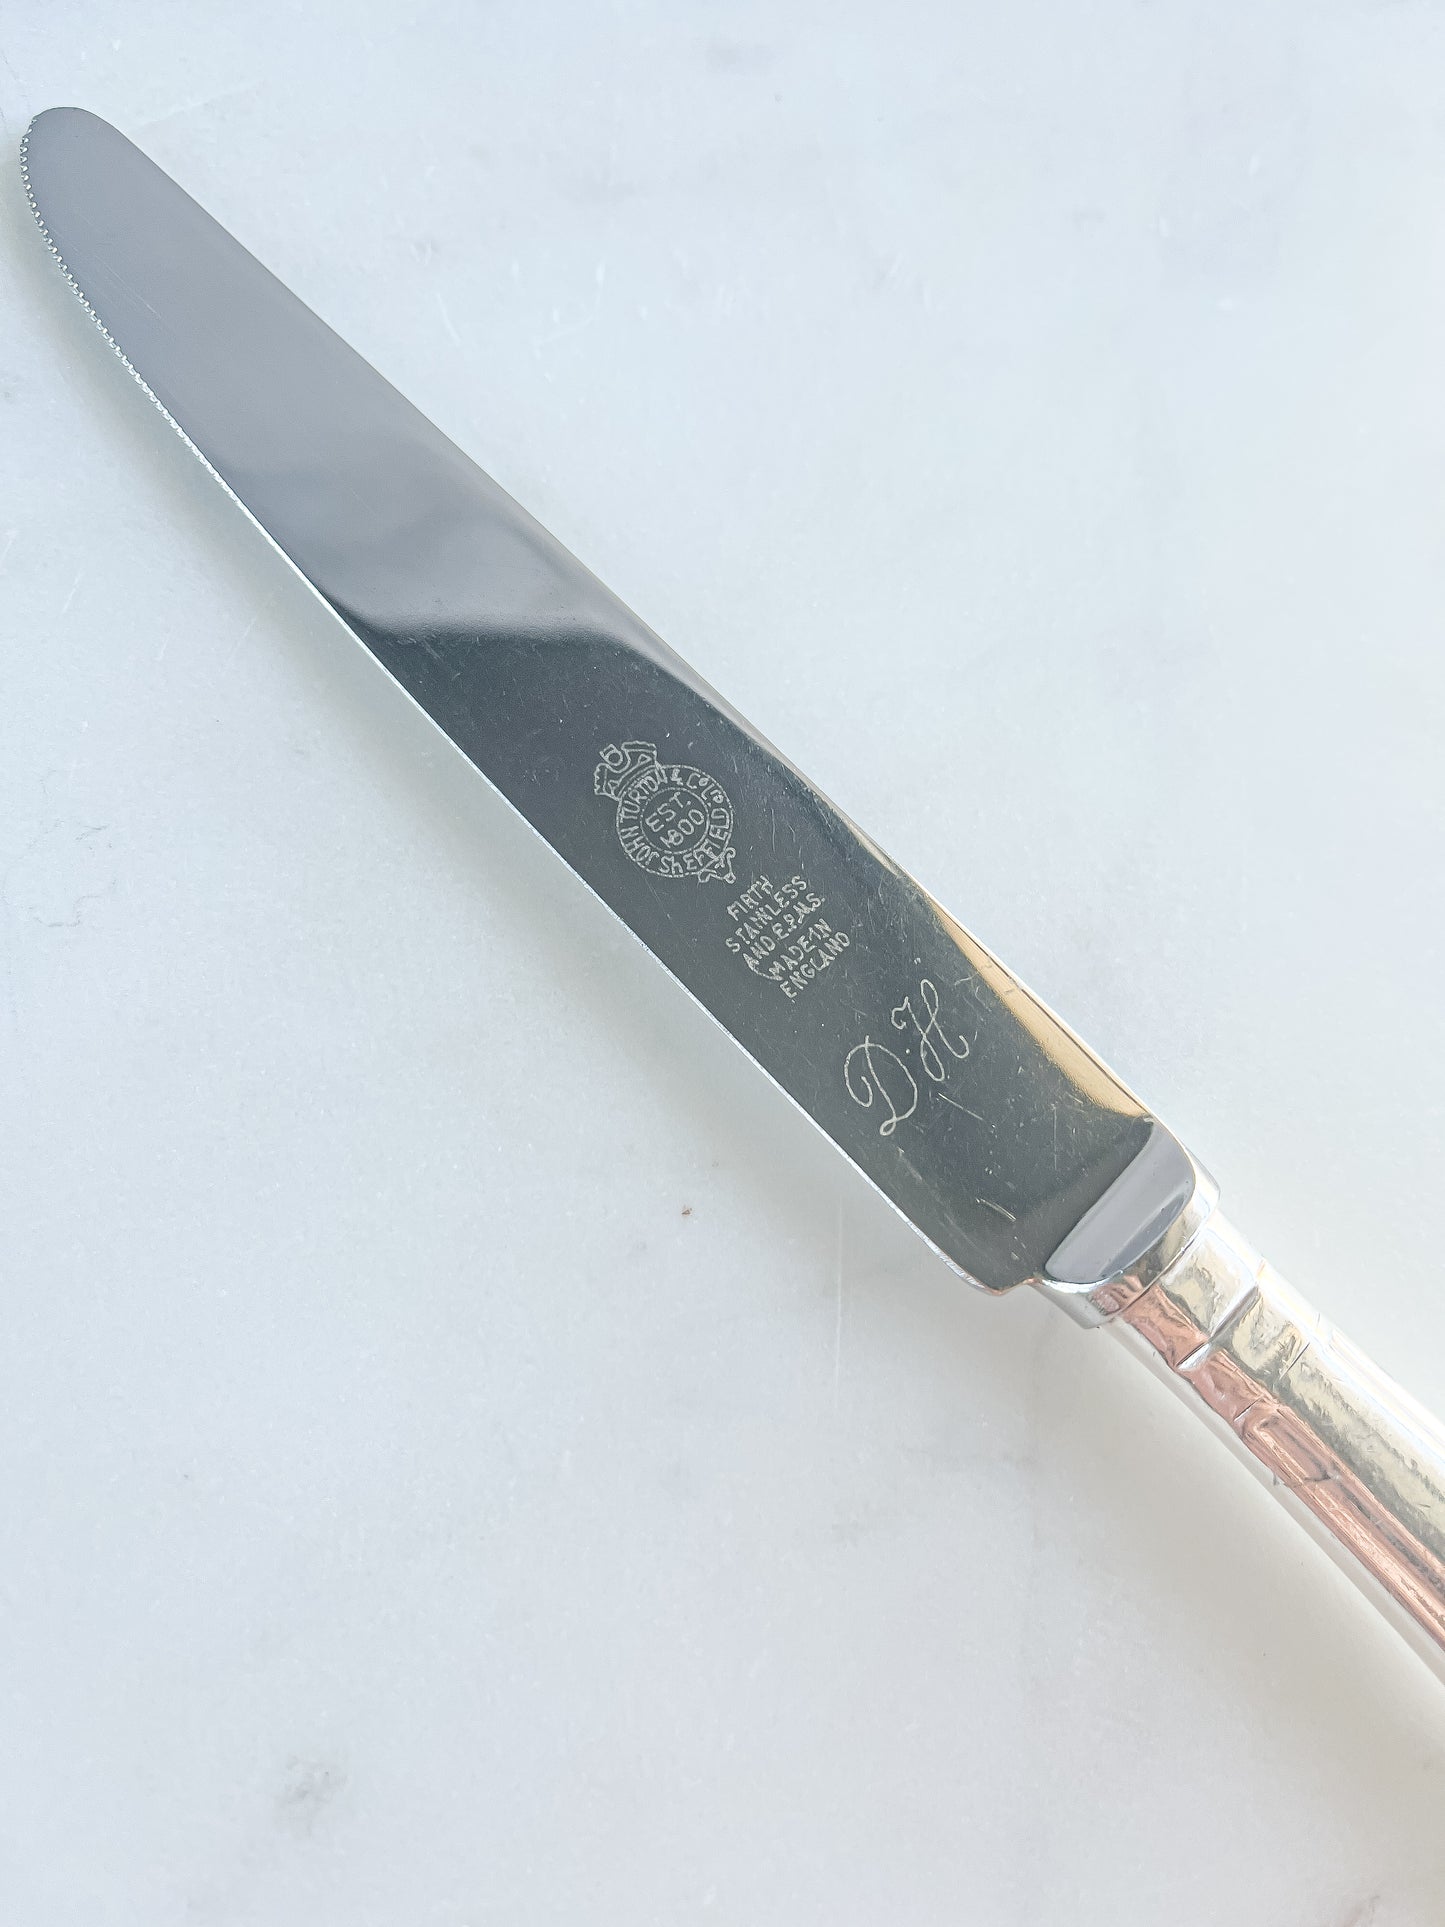 John Turton & Co. Ltd. Monogrammed "D.H." Dinner Knives Set of 6 - 'Kings' Pattern